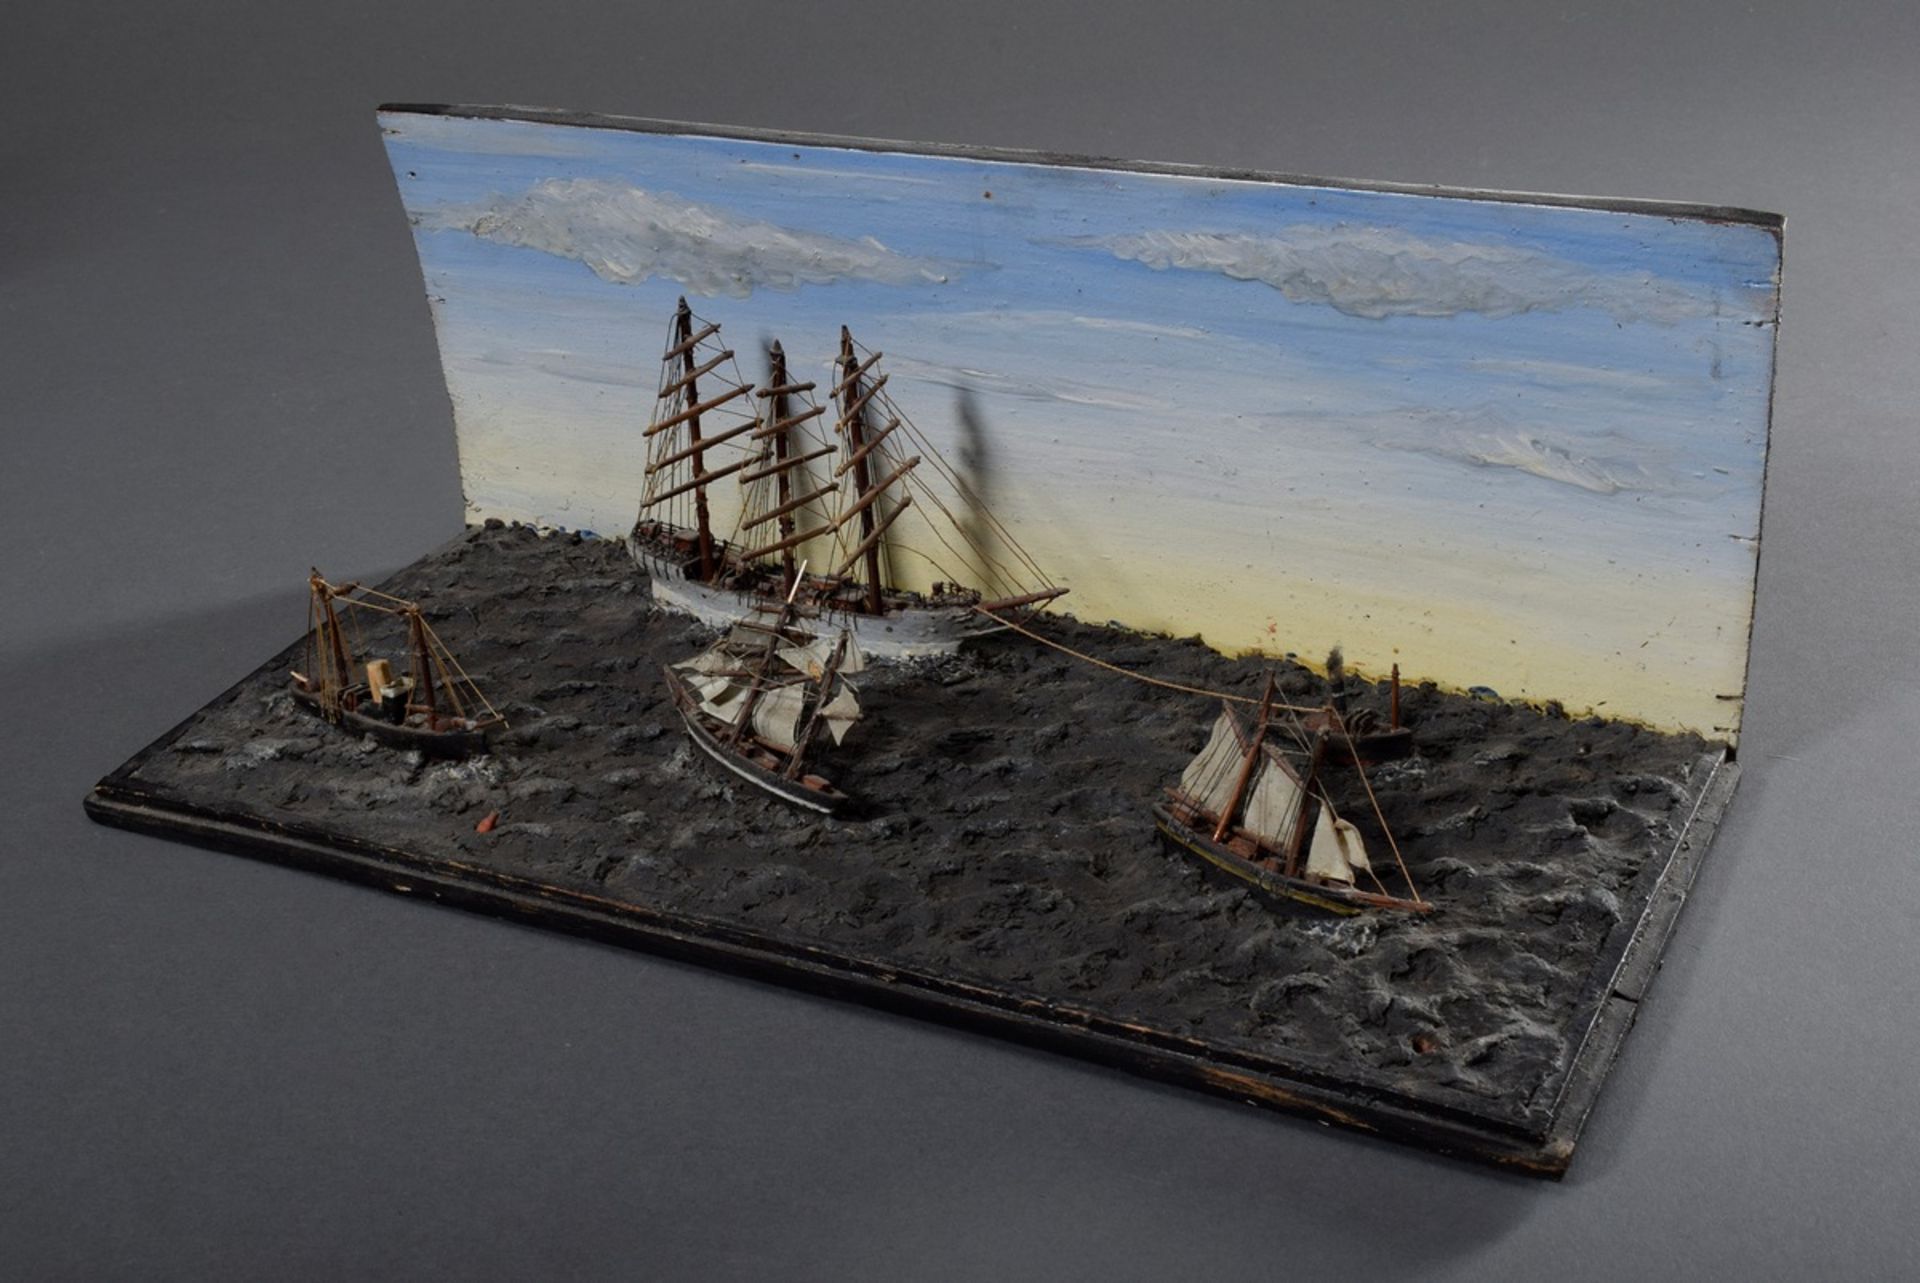 Miniatur Diorama "Schiffsverkehr auf See", Holz farbig gefasst mit teilweise ge - Bild 2 aus 5